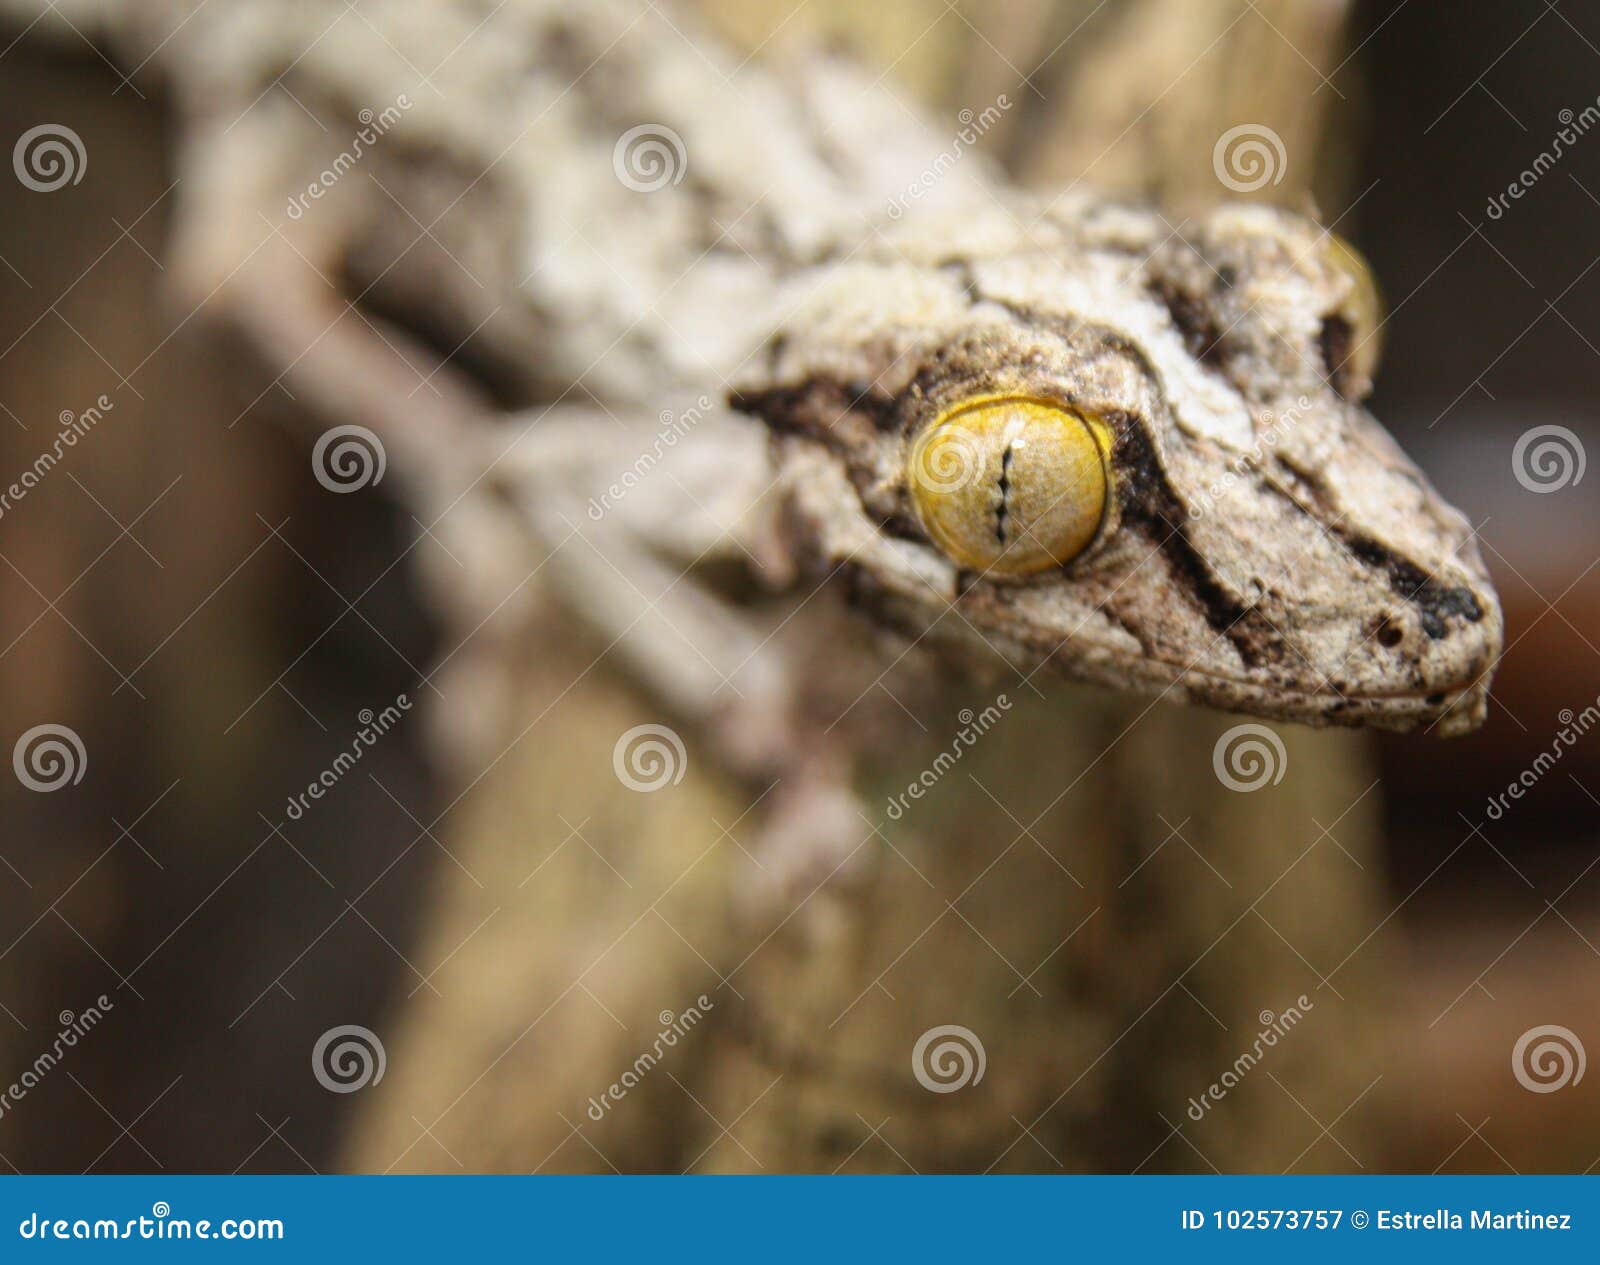 chameleon yellow eye